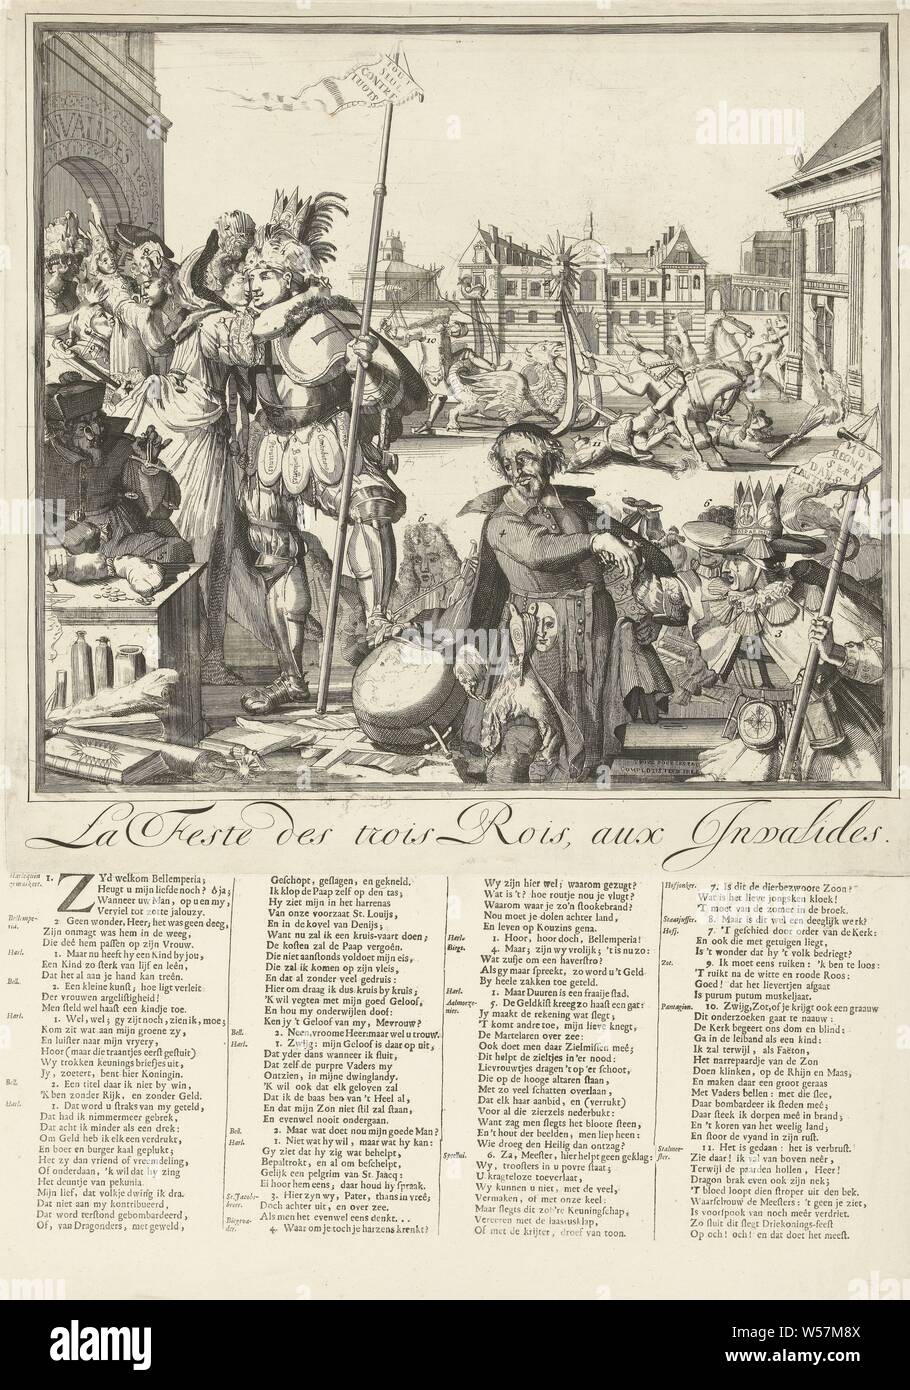 Cartoon auf dem Flug von James II. nach Frankreich, 1689 La Feste des Trois Rois, aux Invalides (Titel auf Objekt) Karikaturen auf James II. und Ludwig XIV. und die Ereignisse, die in der 1688 s 1689 (Titel der Serie), Cartoon auf dem Flug von James II. nach Frankreich, und seine Ankunft dort am Dreikönigstag (6. Januar) 1689. König Ludwig XIV. umarmt Maria von Modena, wer mit dem Kind in Haft gekommen ist. Vorne rechts König James II. in Kleidung mit jakobsmuscheln eingerichtet. In der Mitte ist der Jesuitenpater Peters (Edward Petre) mit einem päpstlichen Krone unter seinem Umhang. Im Hintergrund ist der Dauphin fällt von einem Pferdeschlitten. Unten Stockfoto